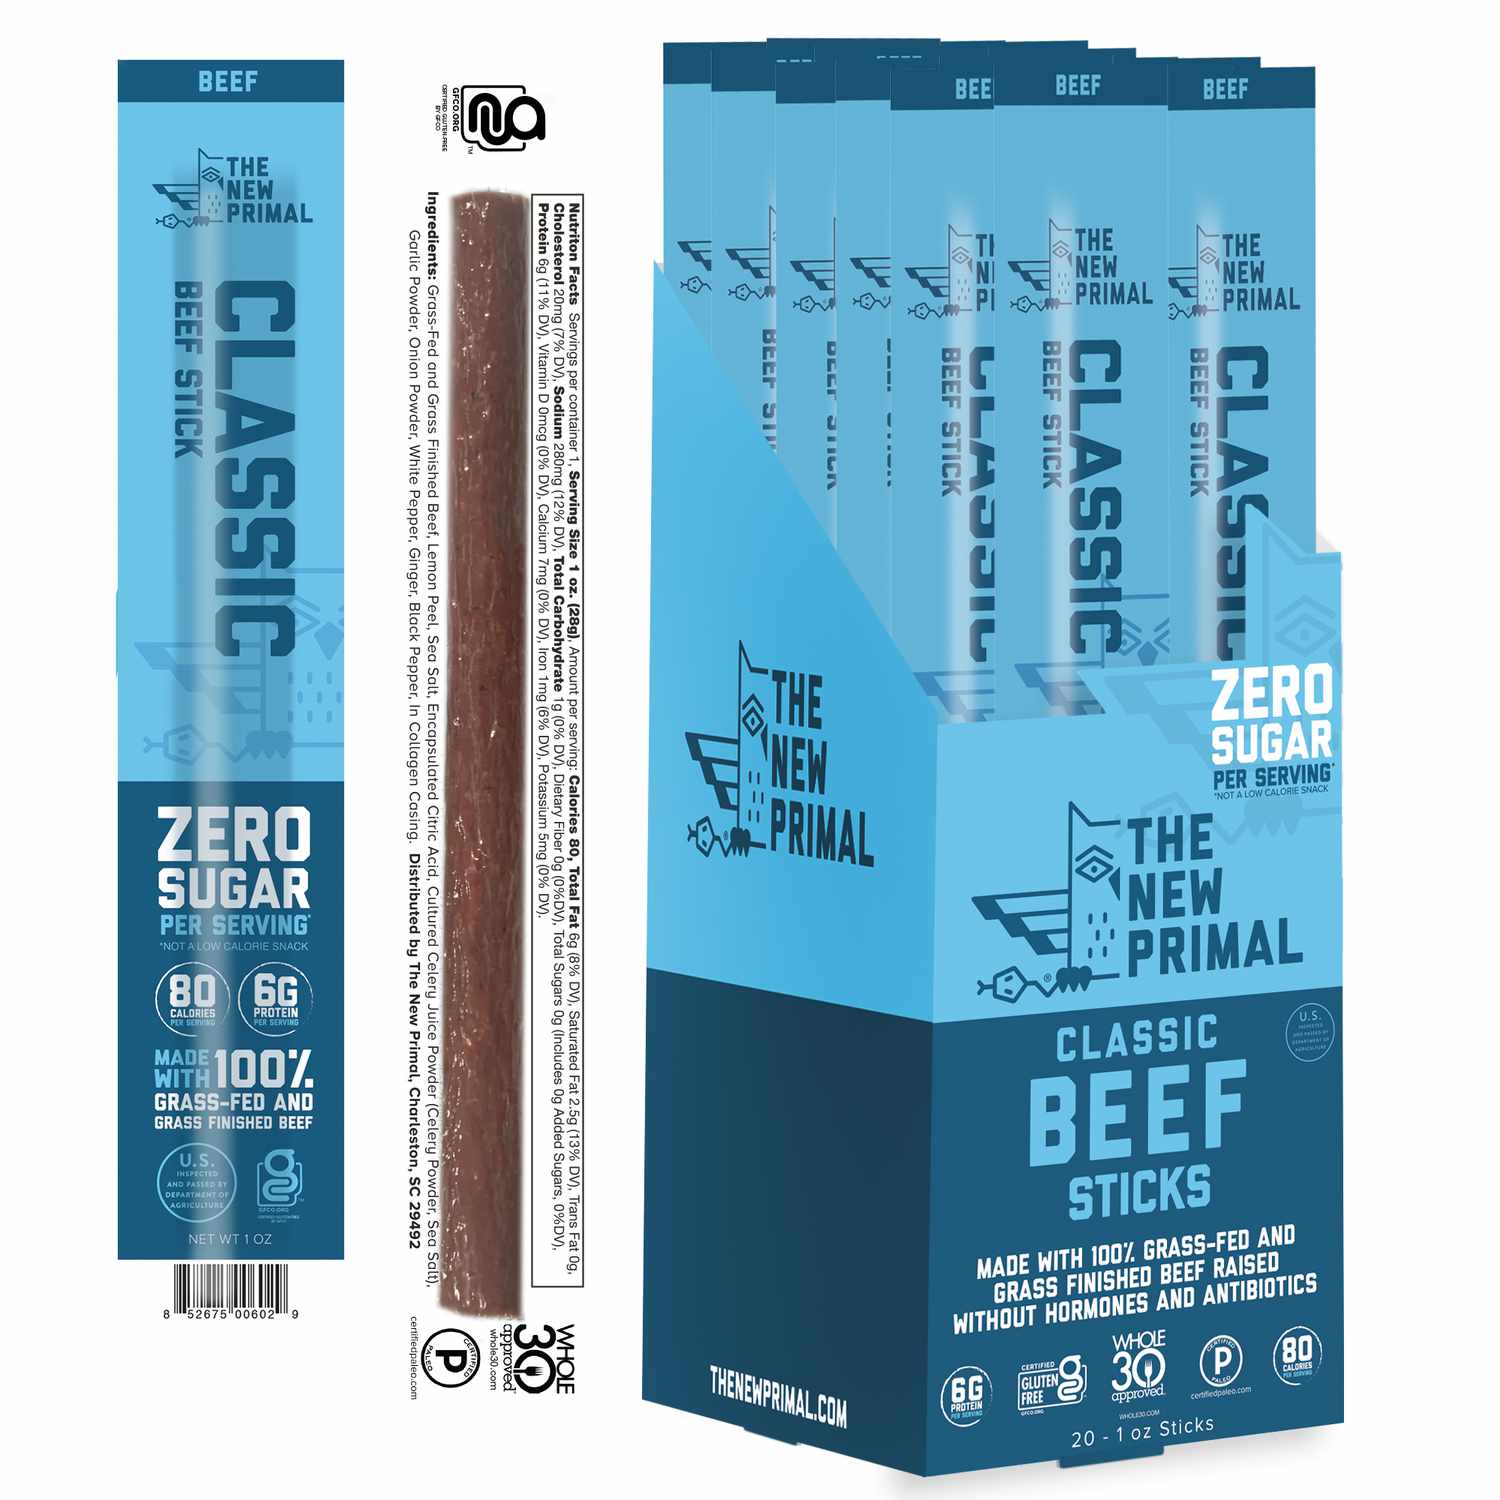 De nieuwe Primal Classic Beef Sticks